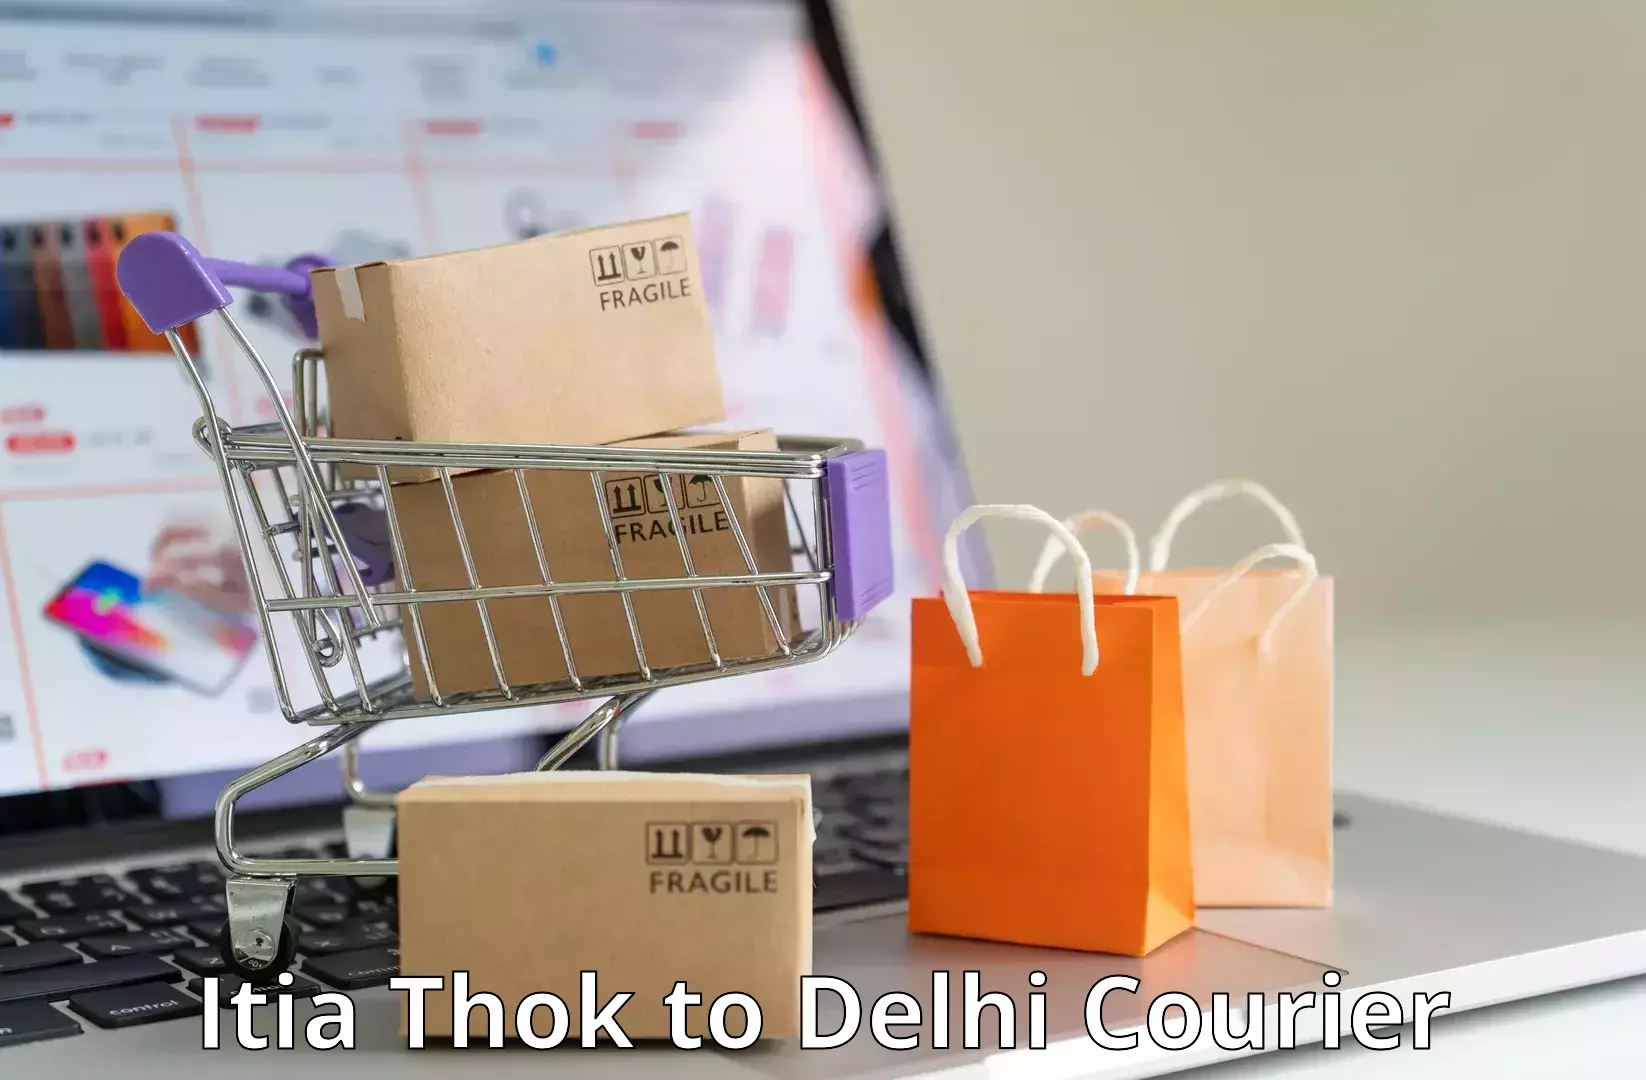 Remote area delivery Itia Thok to Delhi